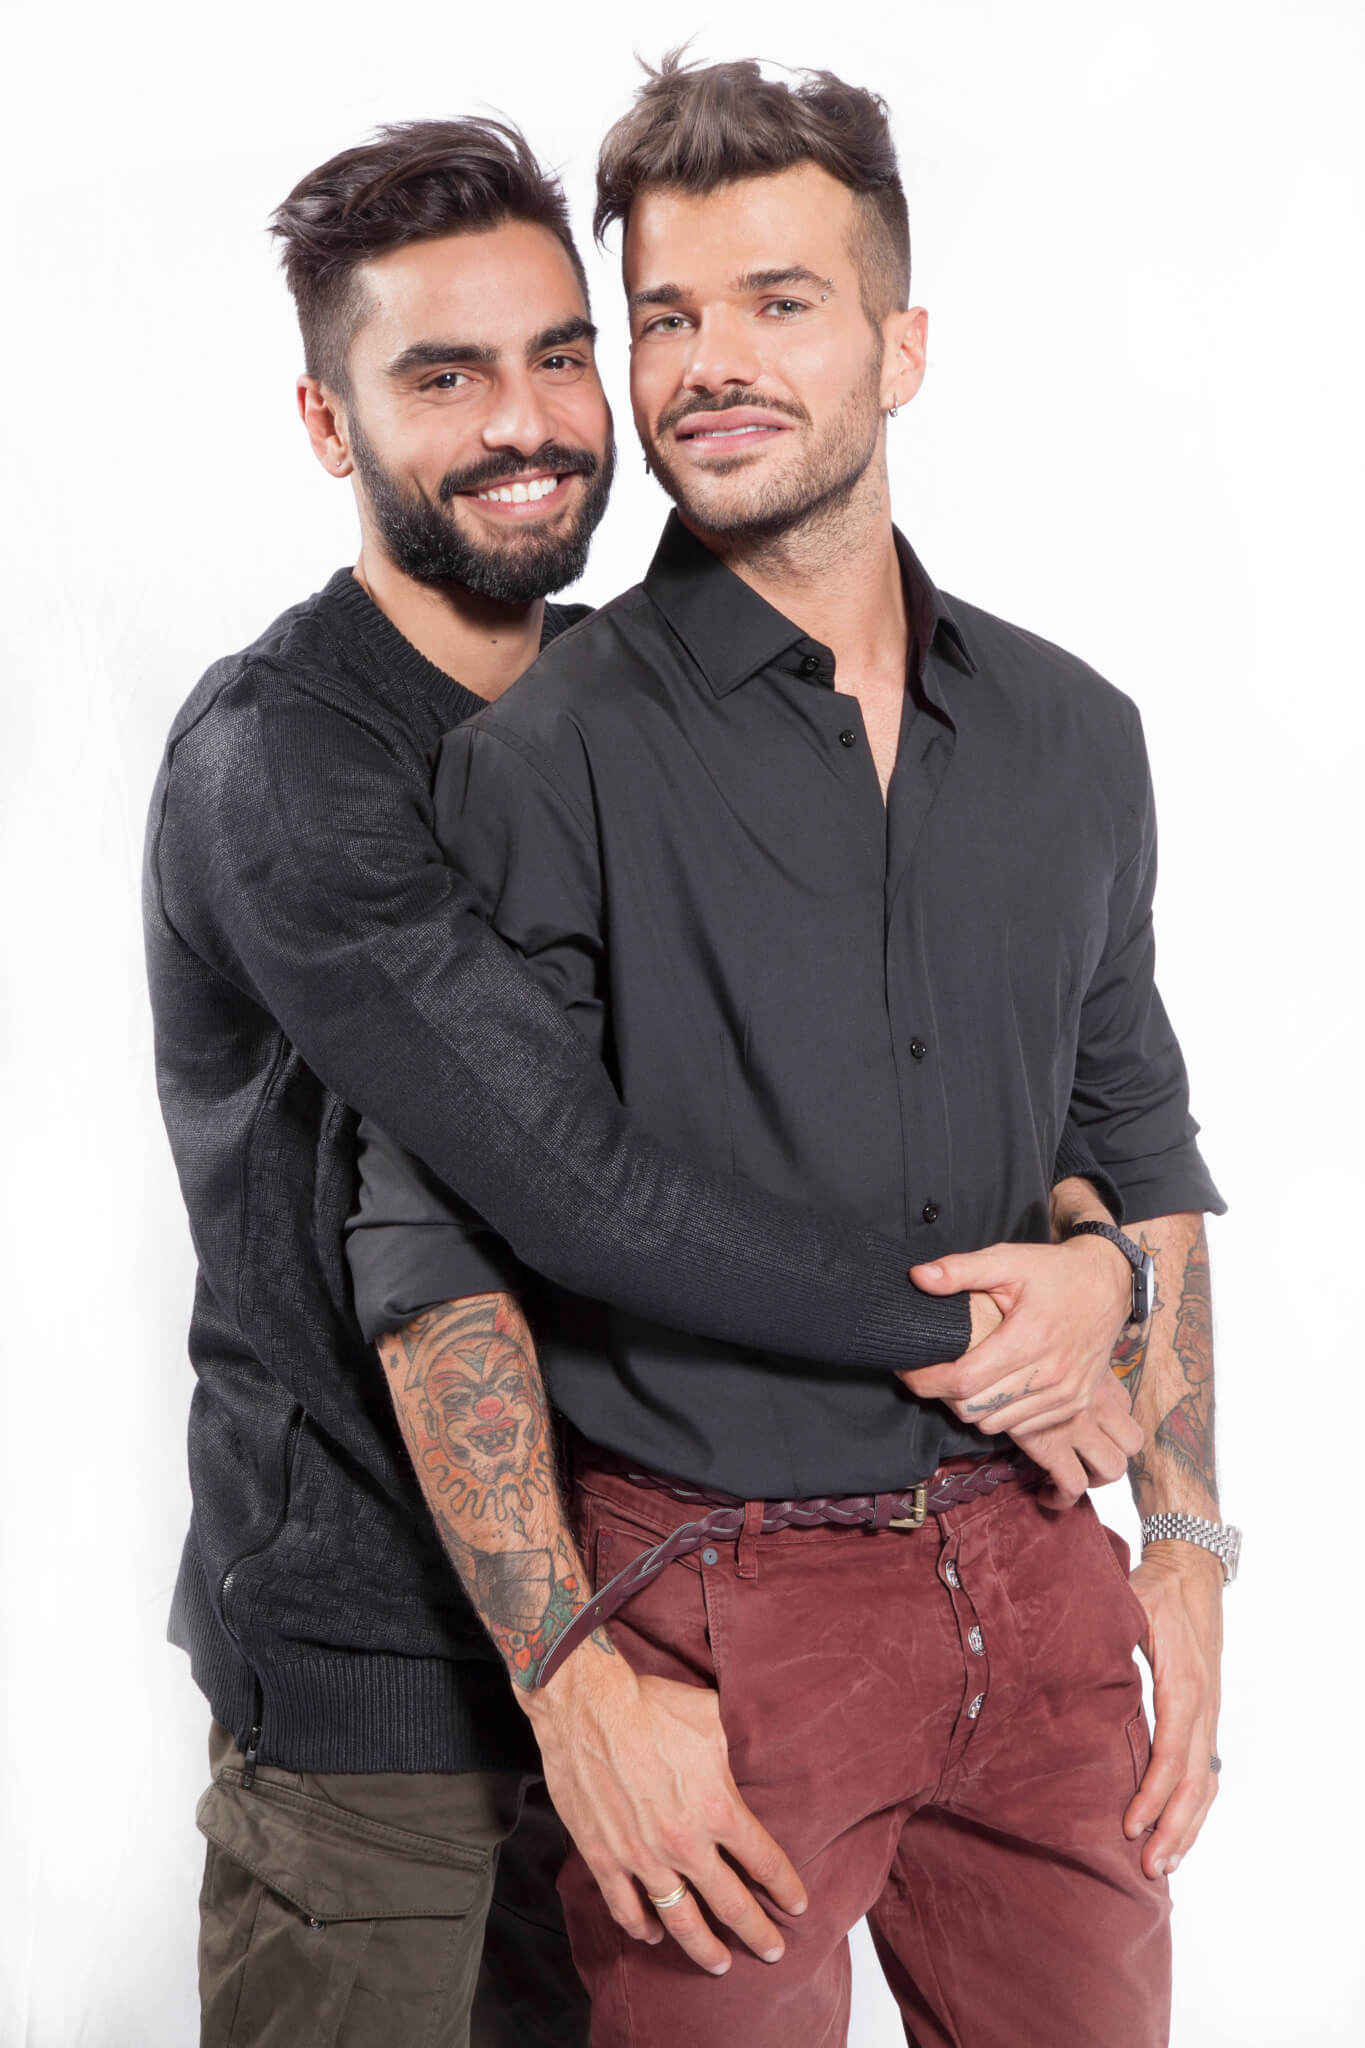 Claudio Sona: "Ha vinto il mio amore per Mario!" - Claudio e Mario POSATO CREDITS MIRTA LISPI PER PHOTOMOVIE - Gay.it